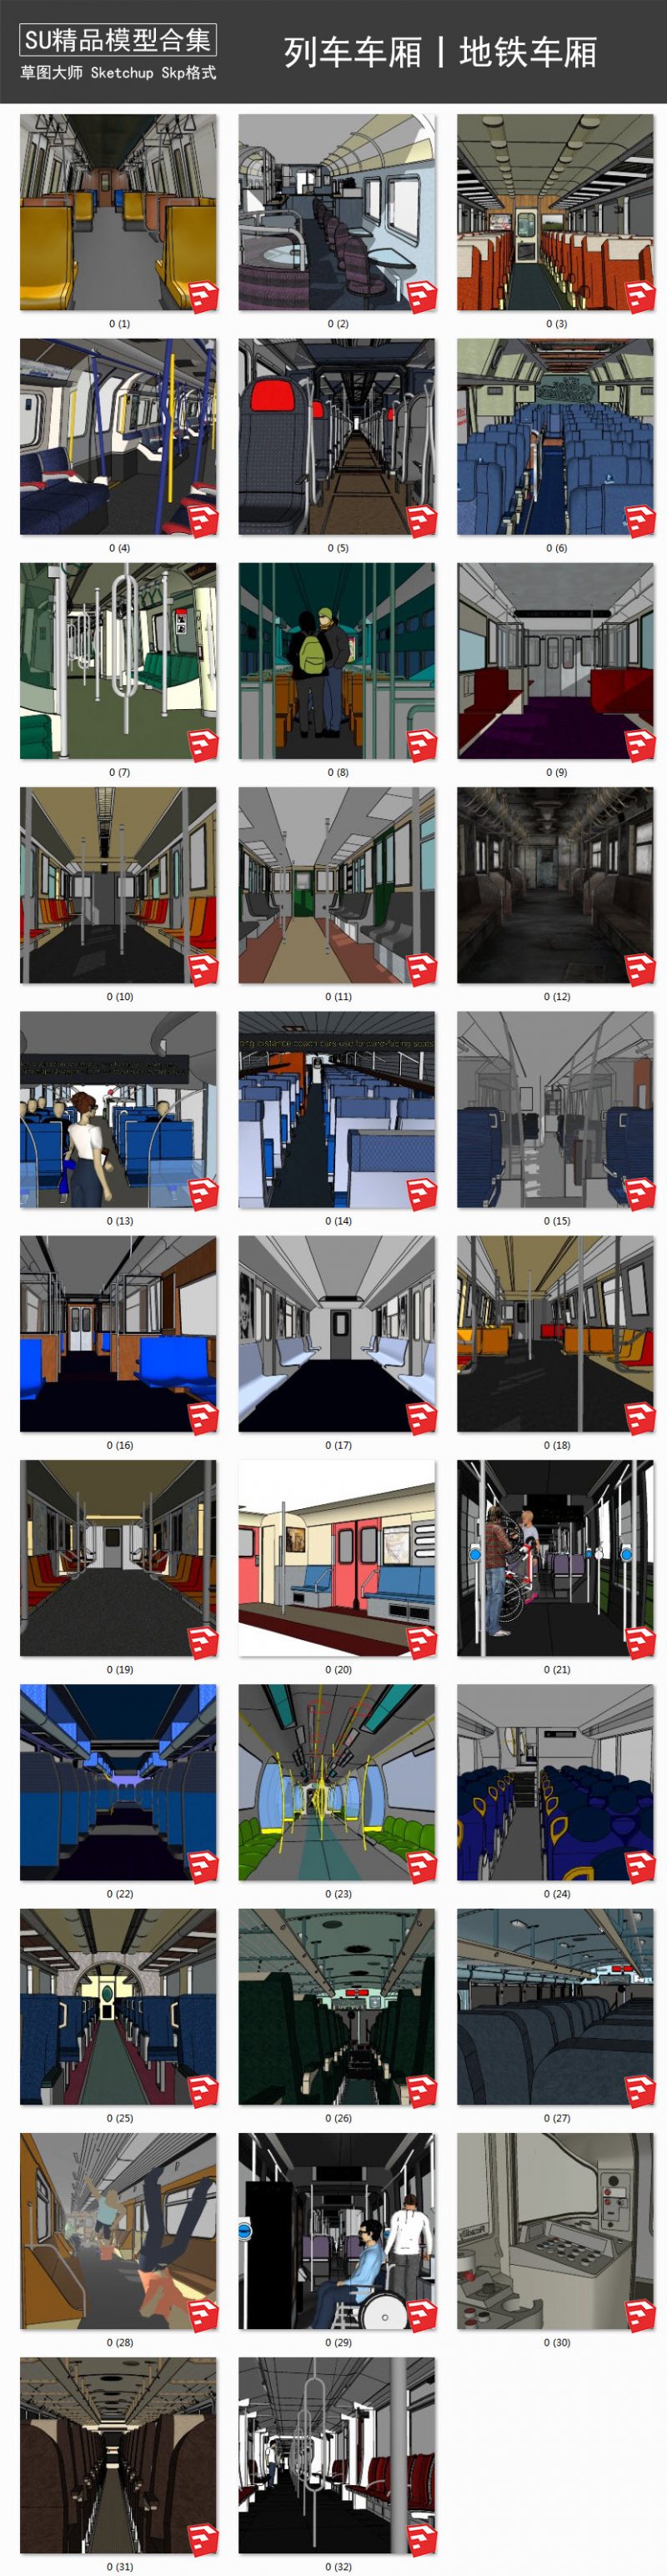 列车车厢丨地铁车厢丨火车内部座椅丨驾驶室 SU模型